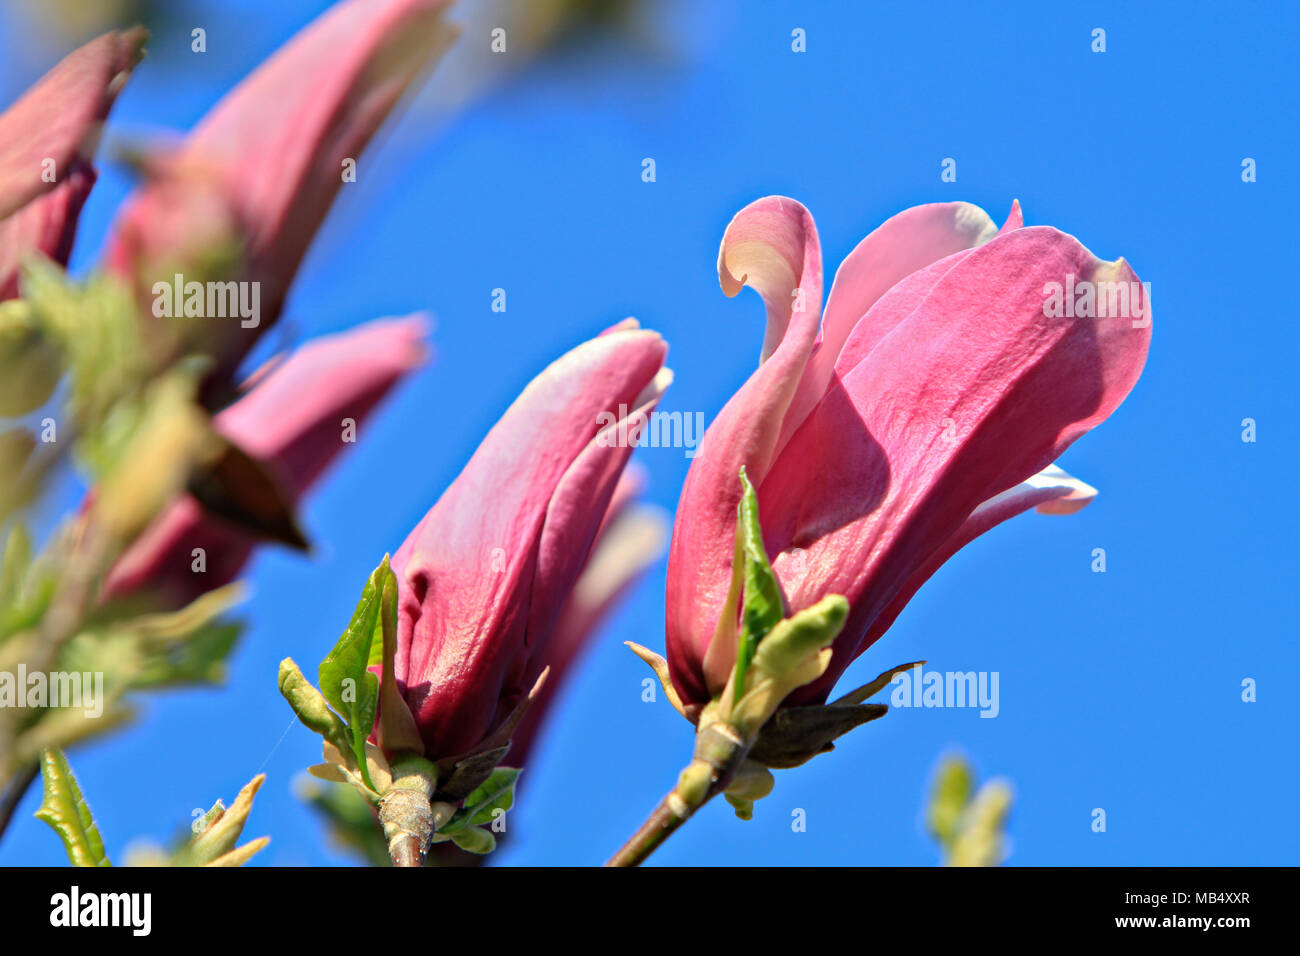 magnolia flowers Stock Photo